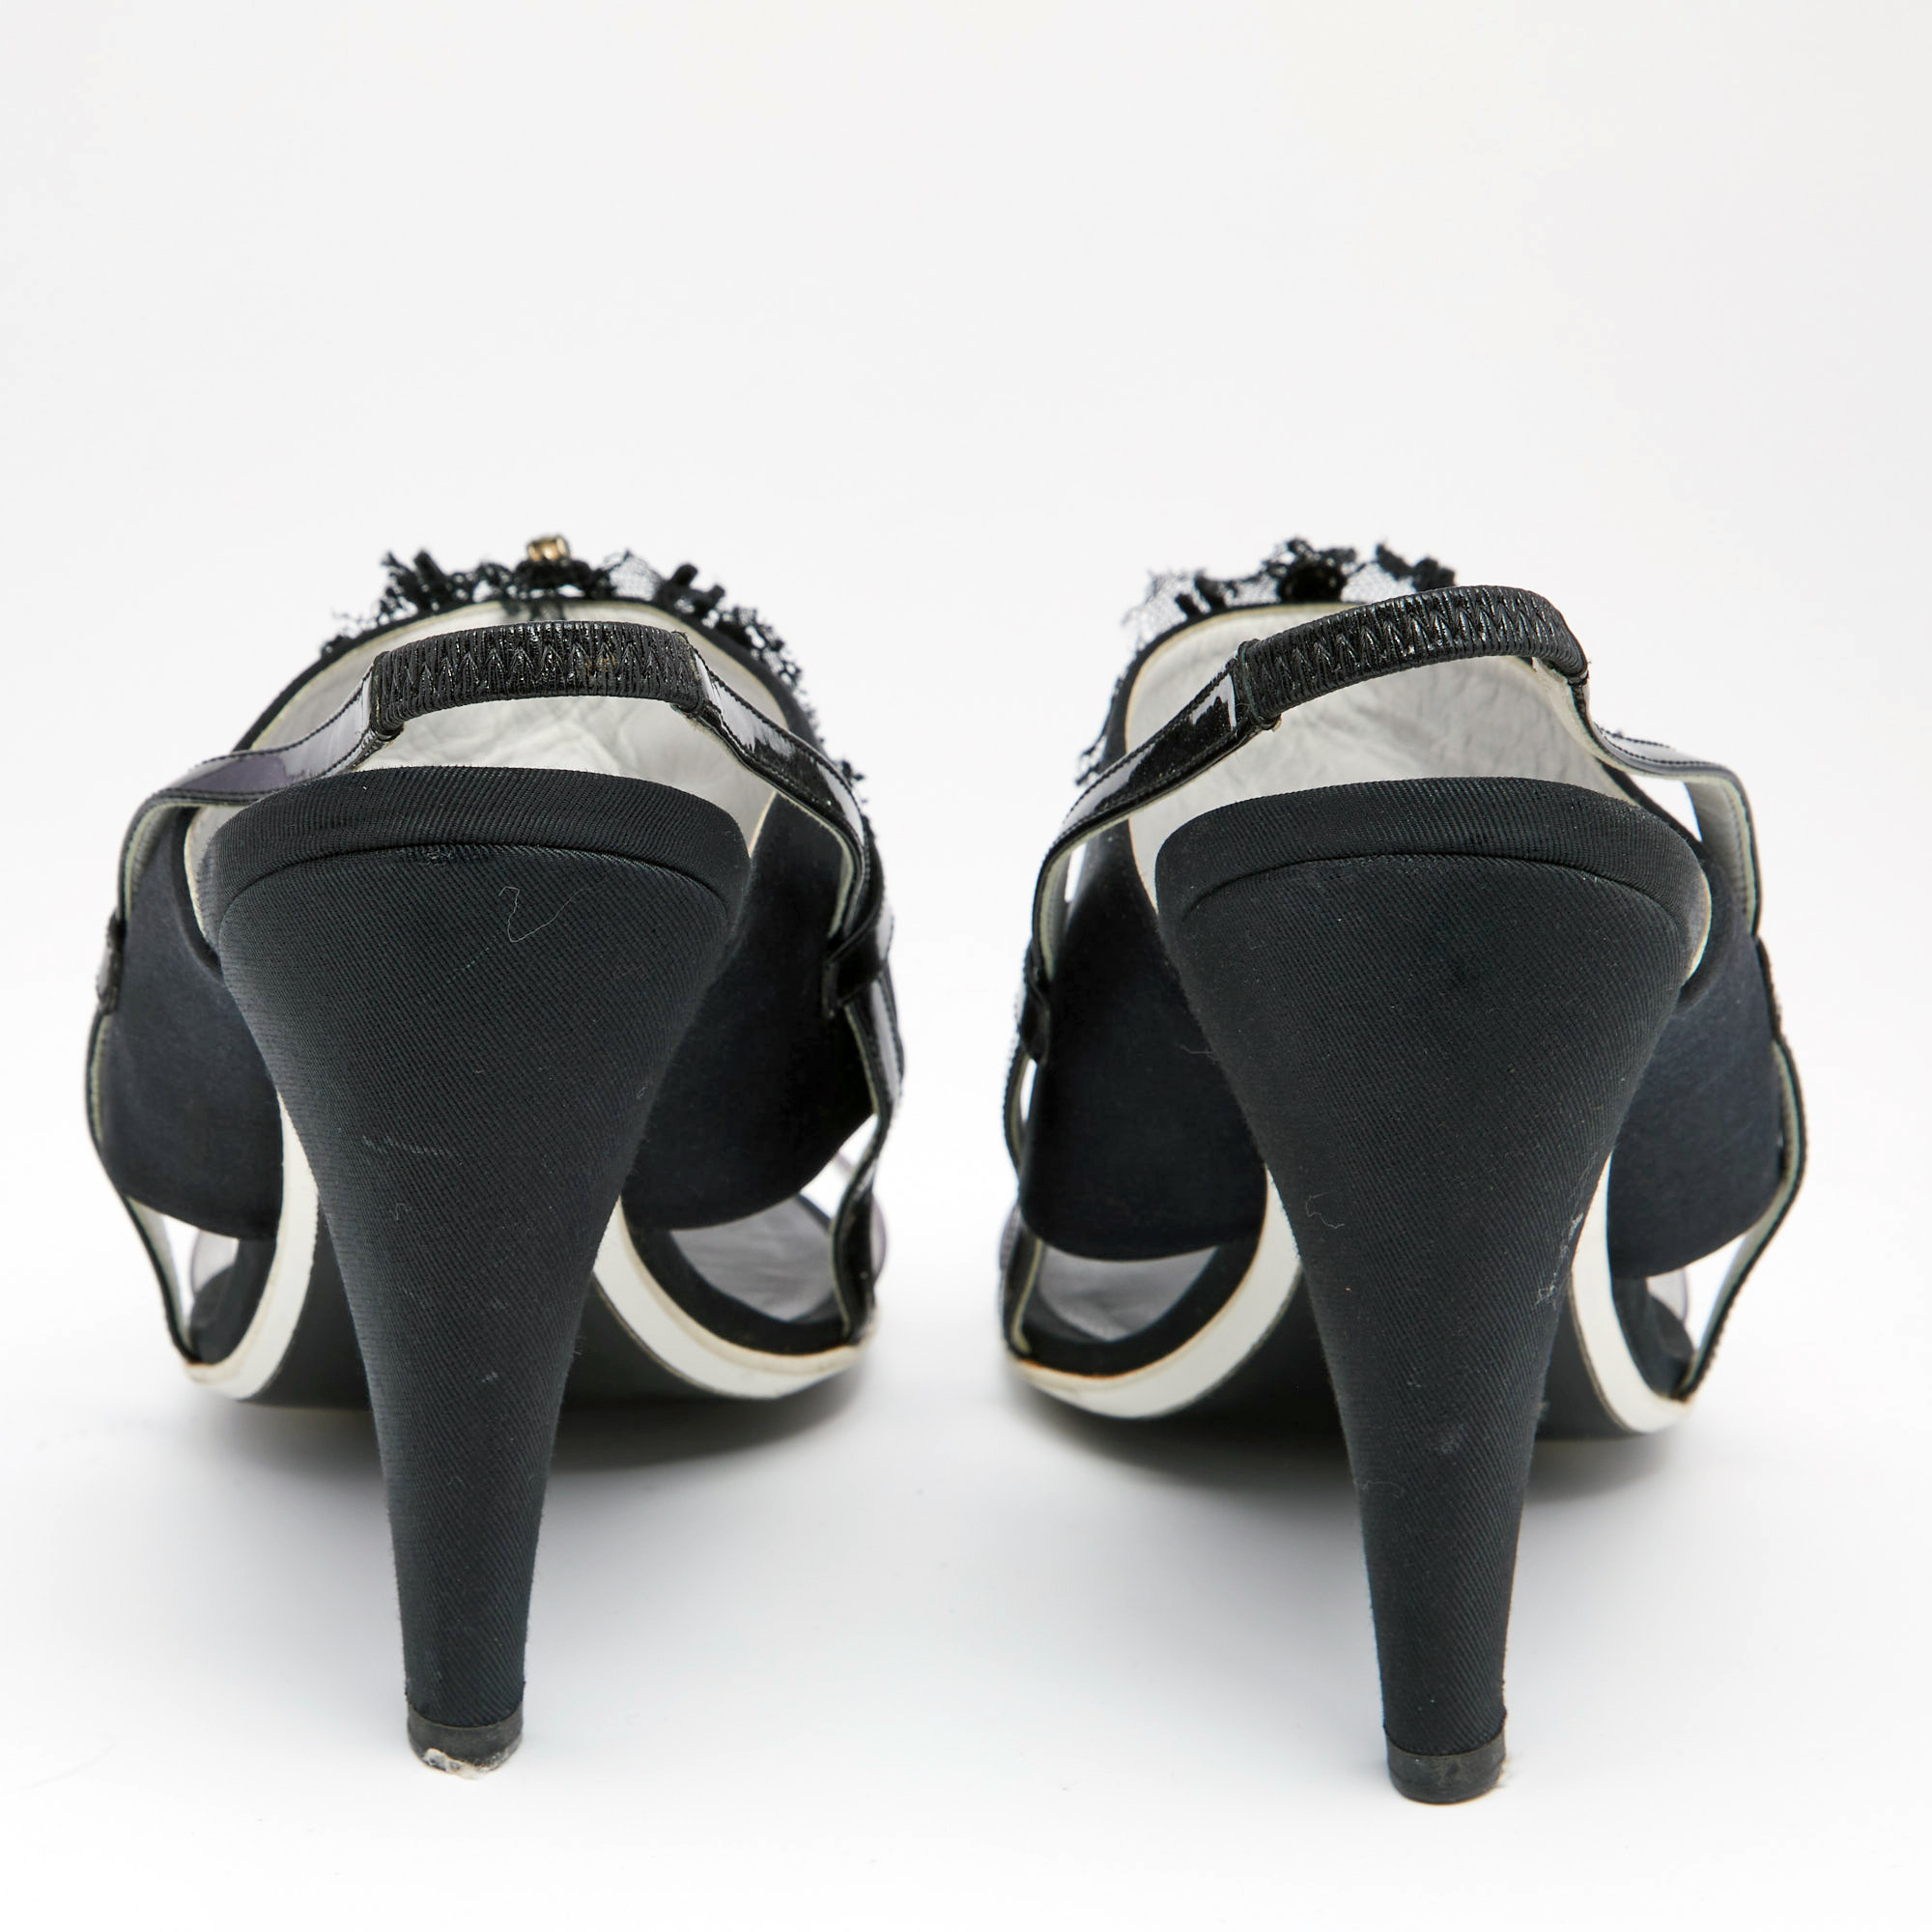 Chanel Black Satin And PVC Embellished Slingback Sandals Size 40